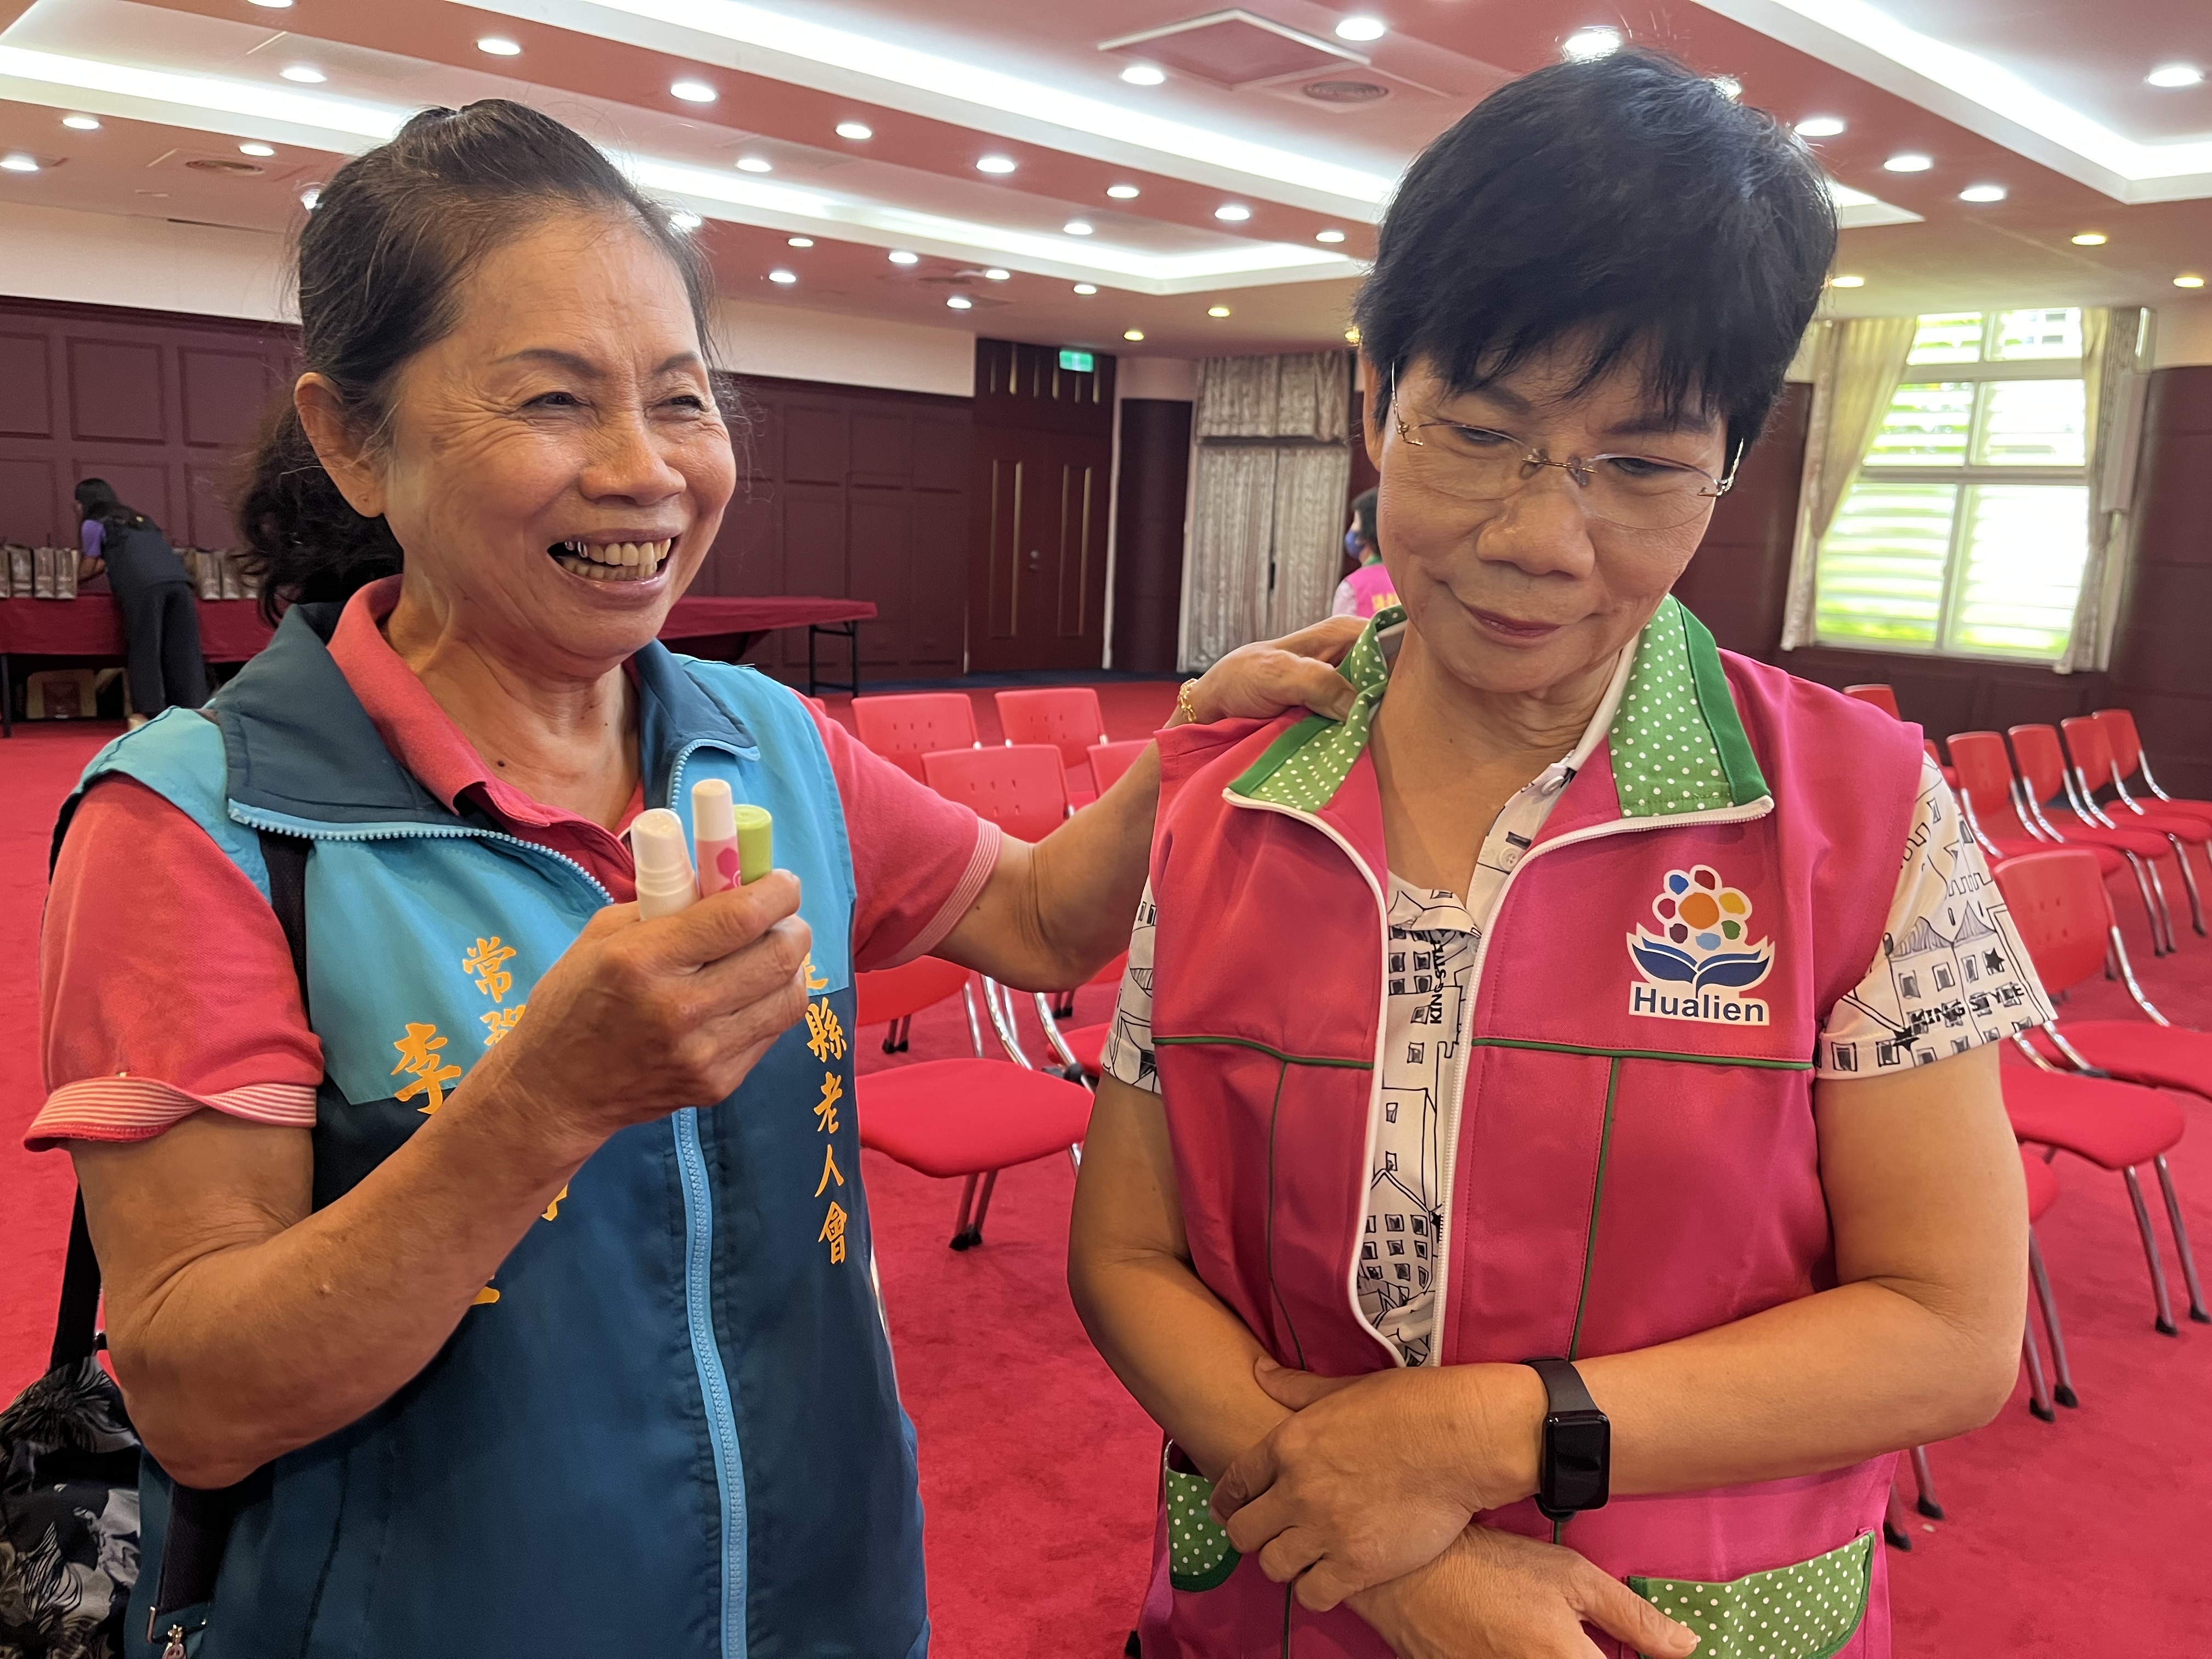 77岁的李秀玉（左）担任志工超过30年，她的专长是筋络按摩，总是随身带精油为长者纾压。记者王燕华／摄影